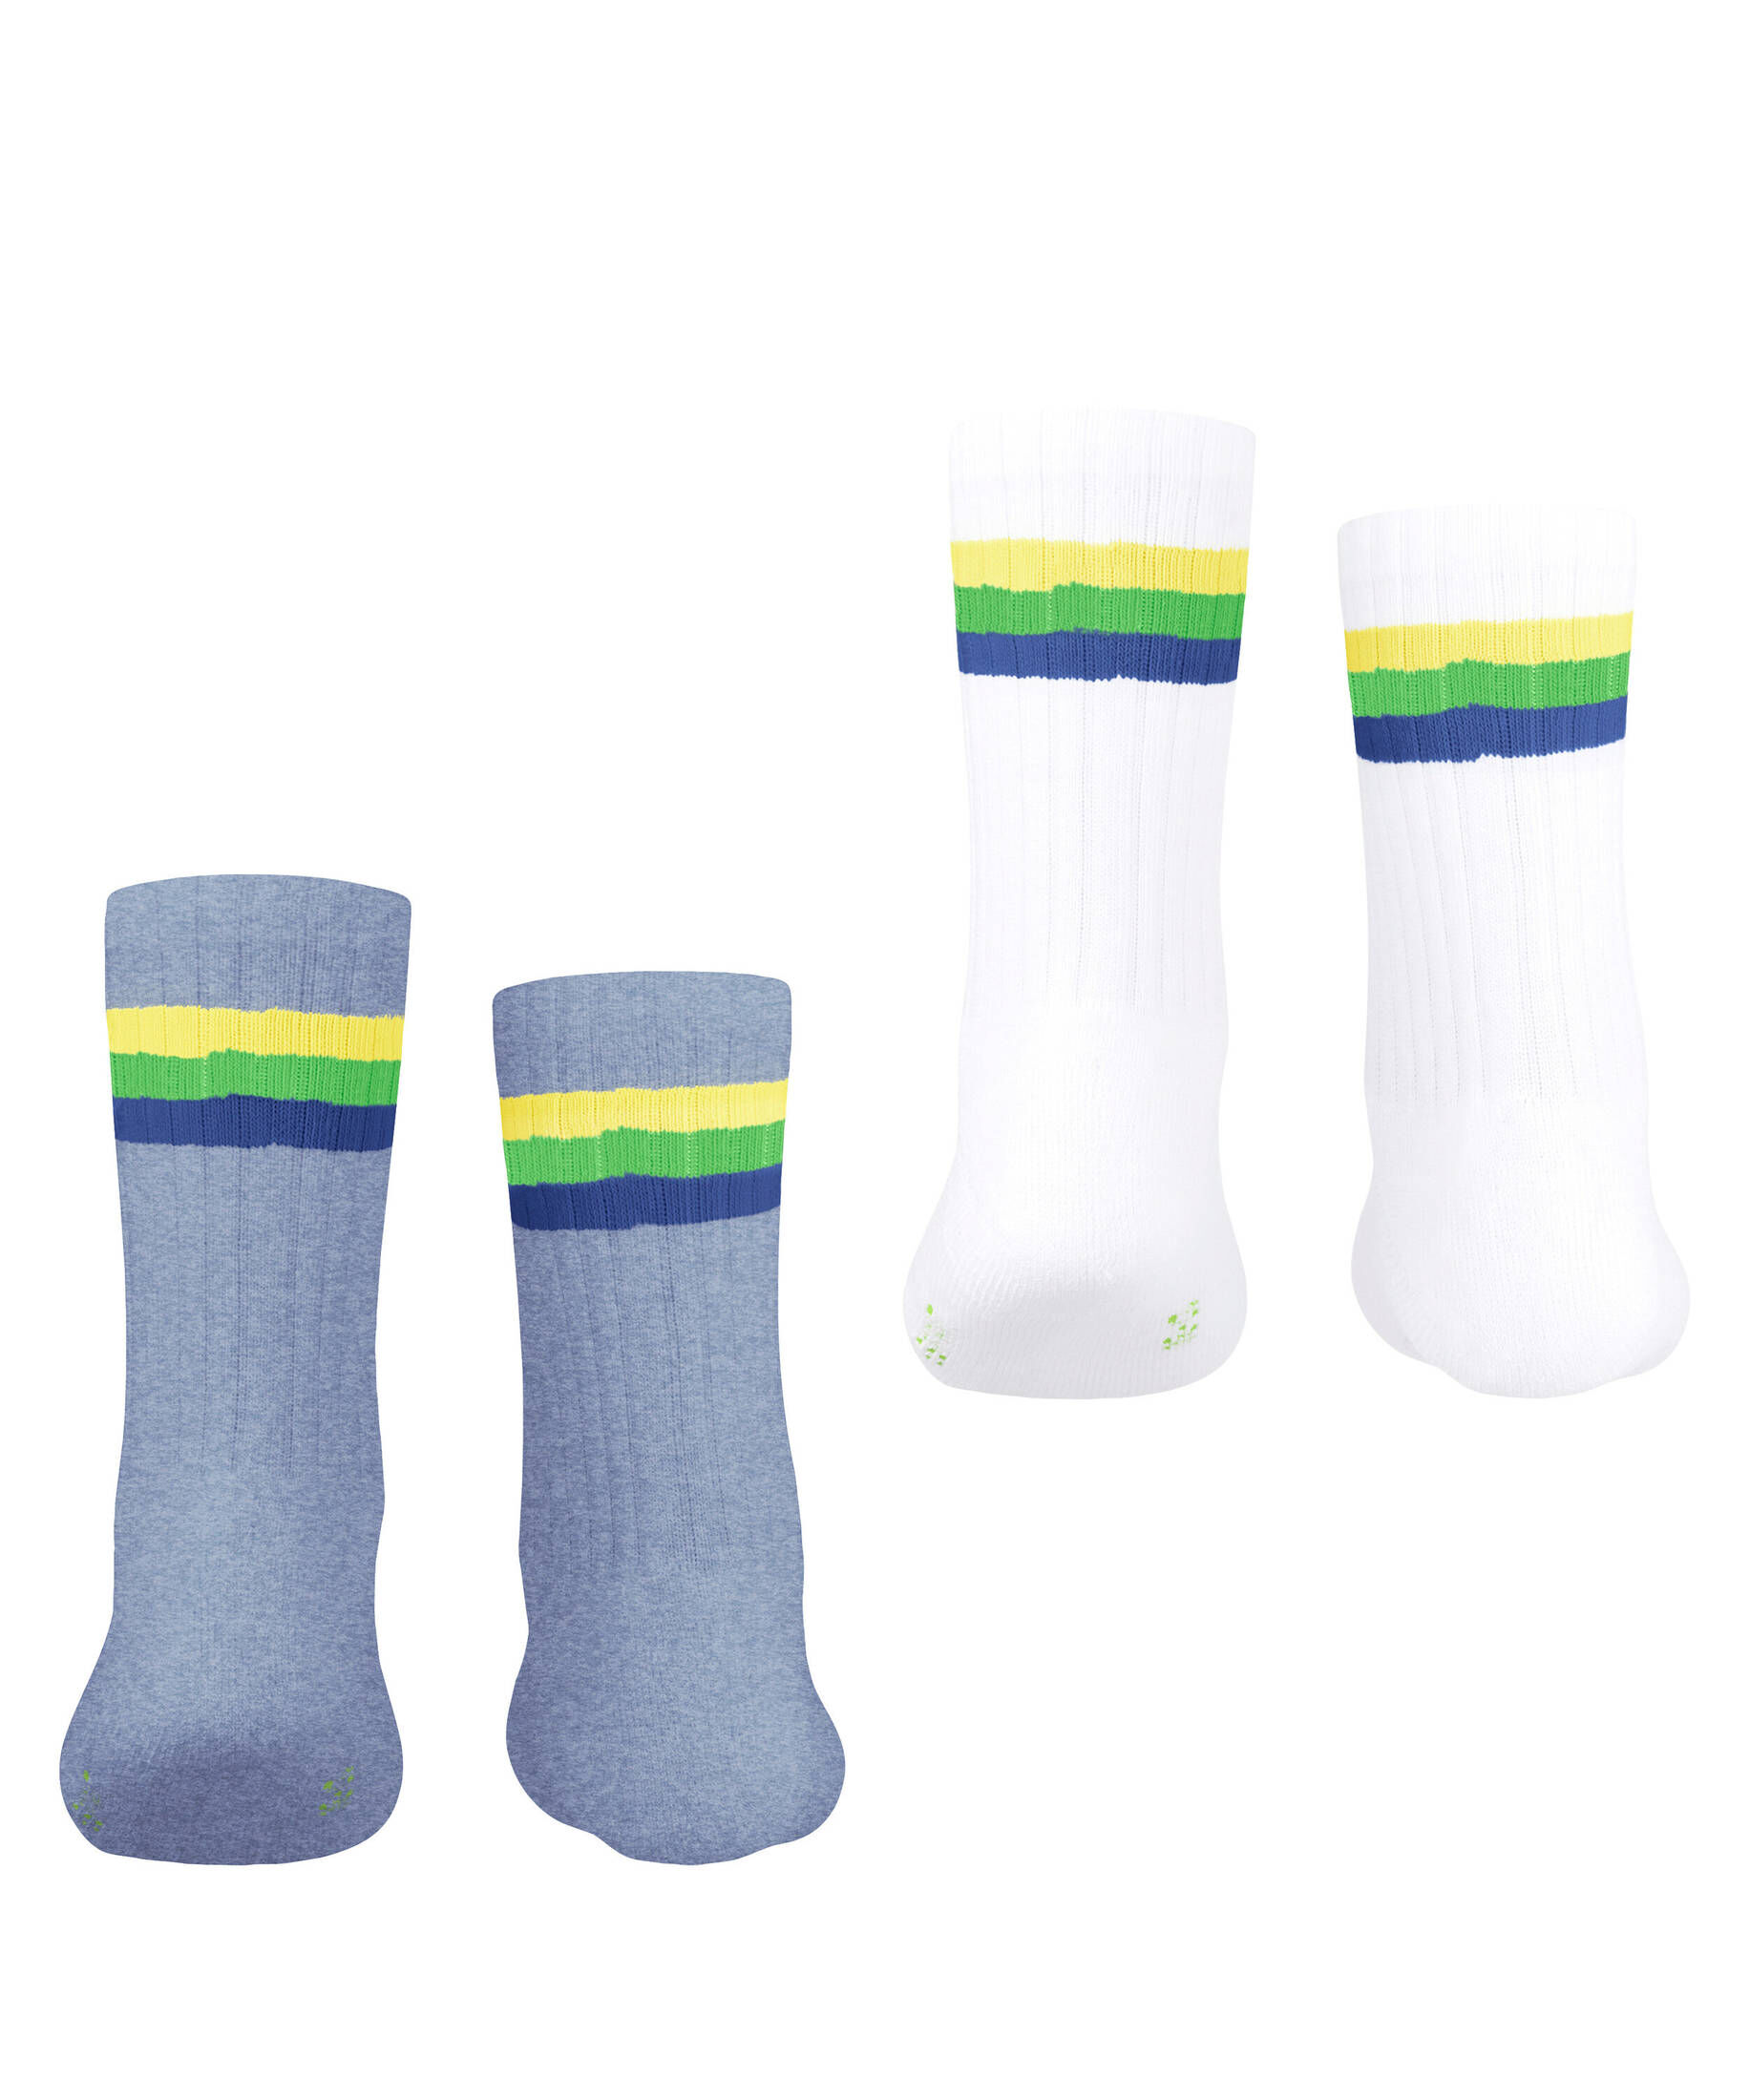 Esprit Kinder Socken Tennis Stripe 2-Pack kaufen engelhorn